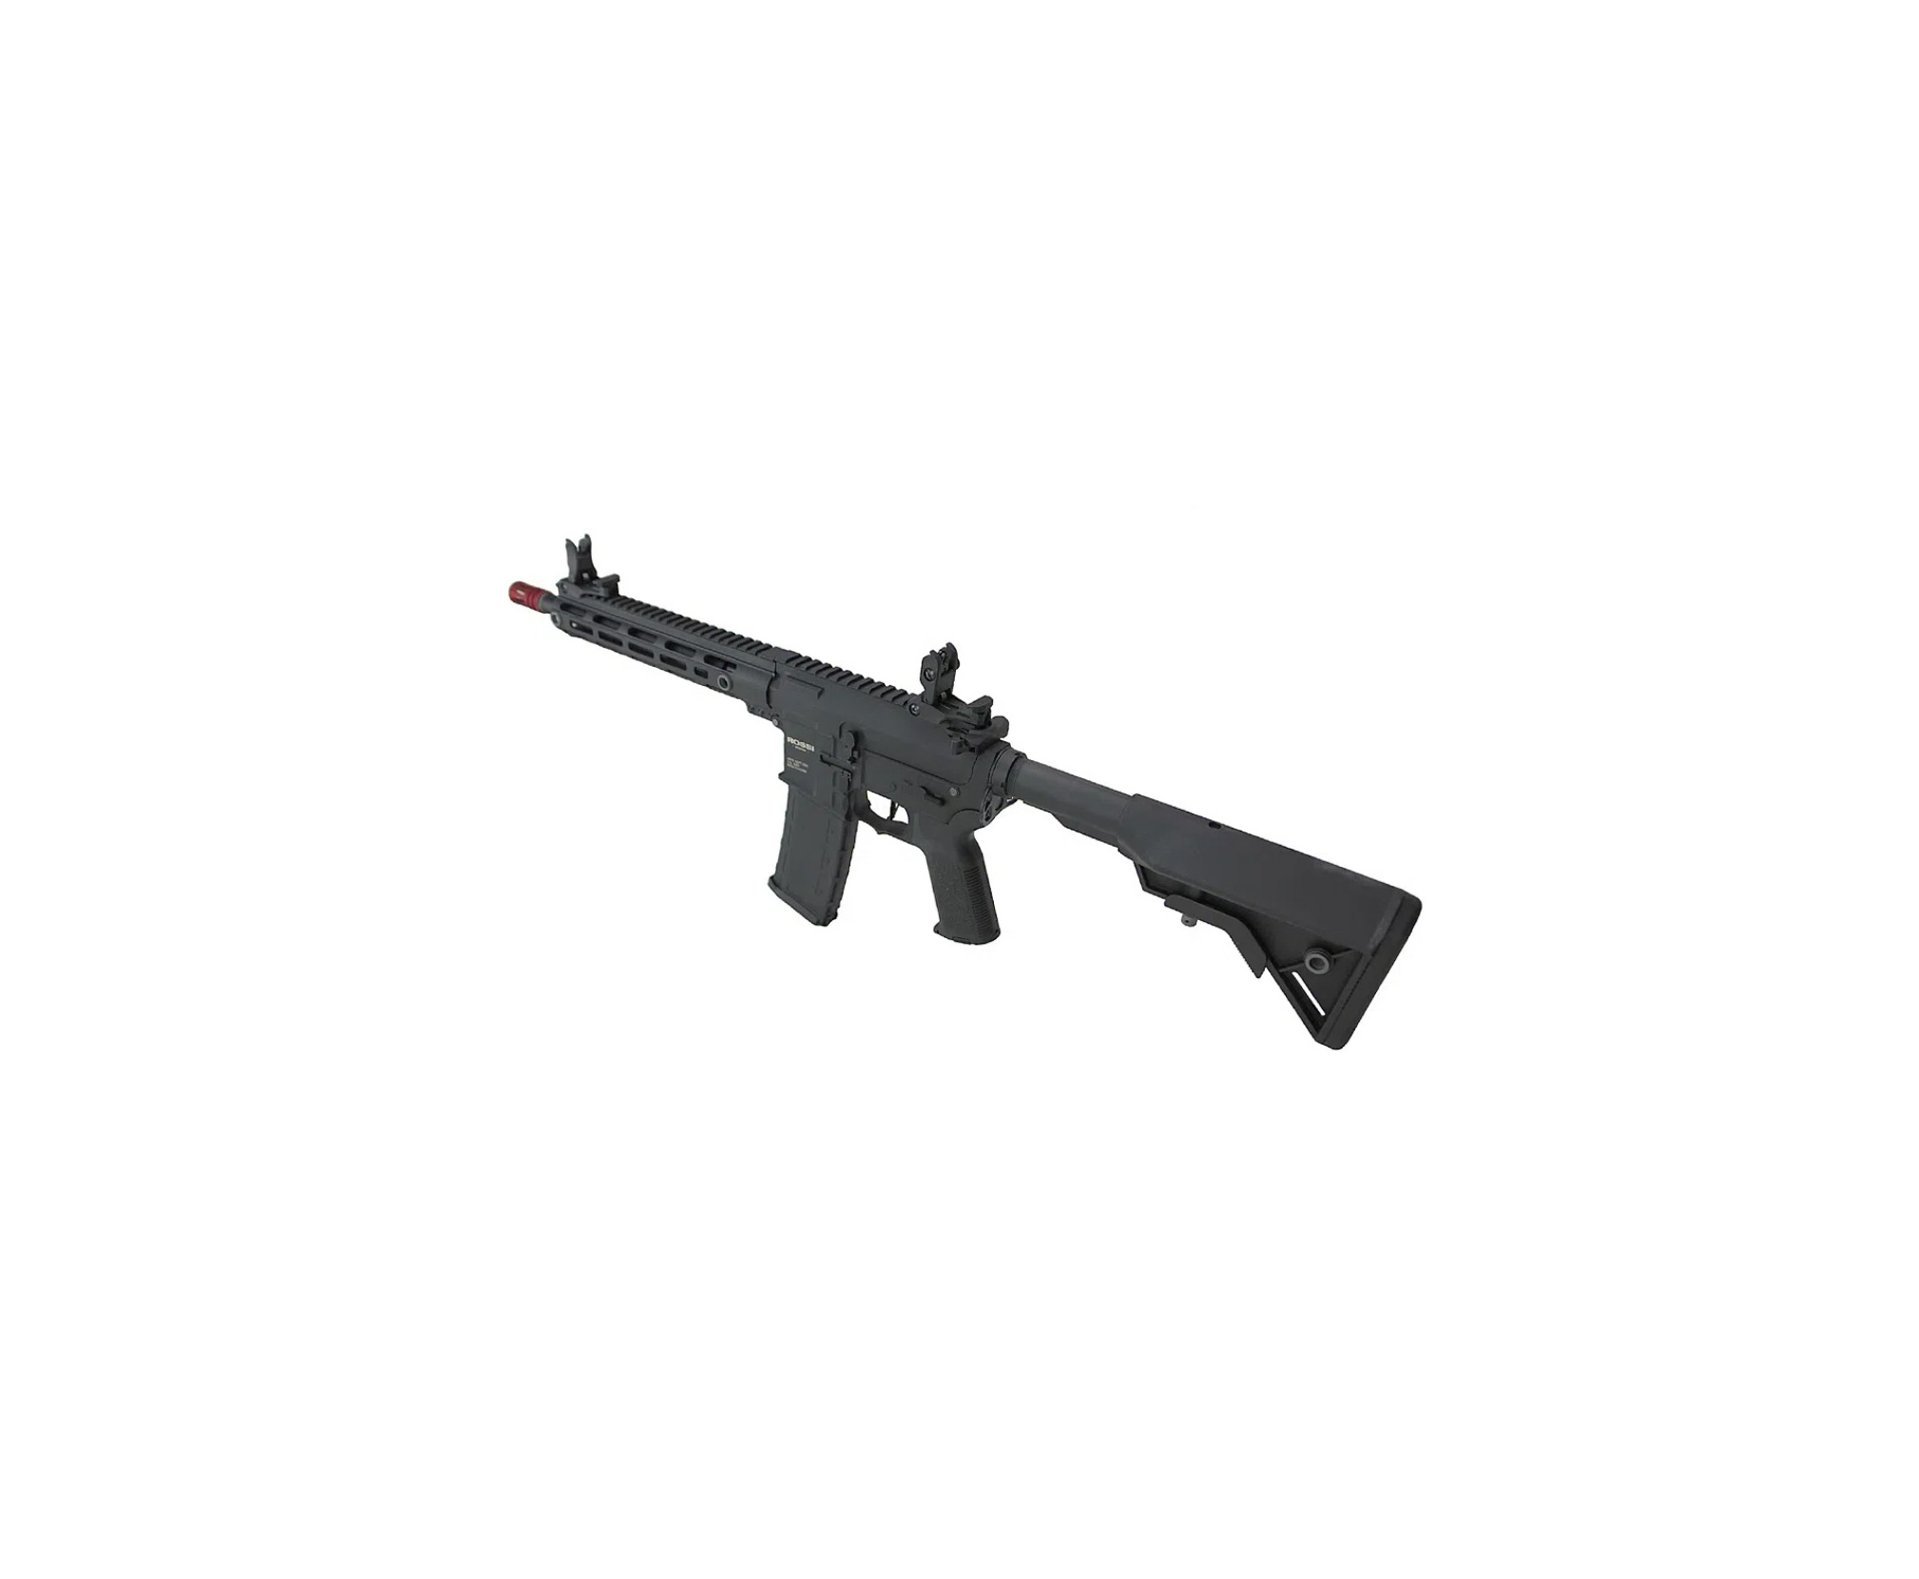 Rifle de Airsoft AEG AR15 Neptune 10” Plus Gatilho ETU Programável 6mm - Rossi + Bateria + Carregador + Capa + BBS + Oleo de Silicone